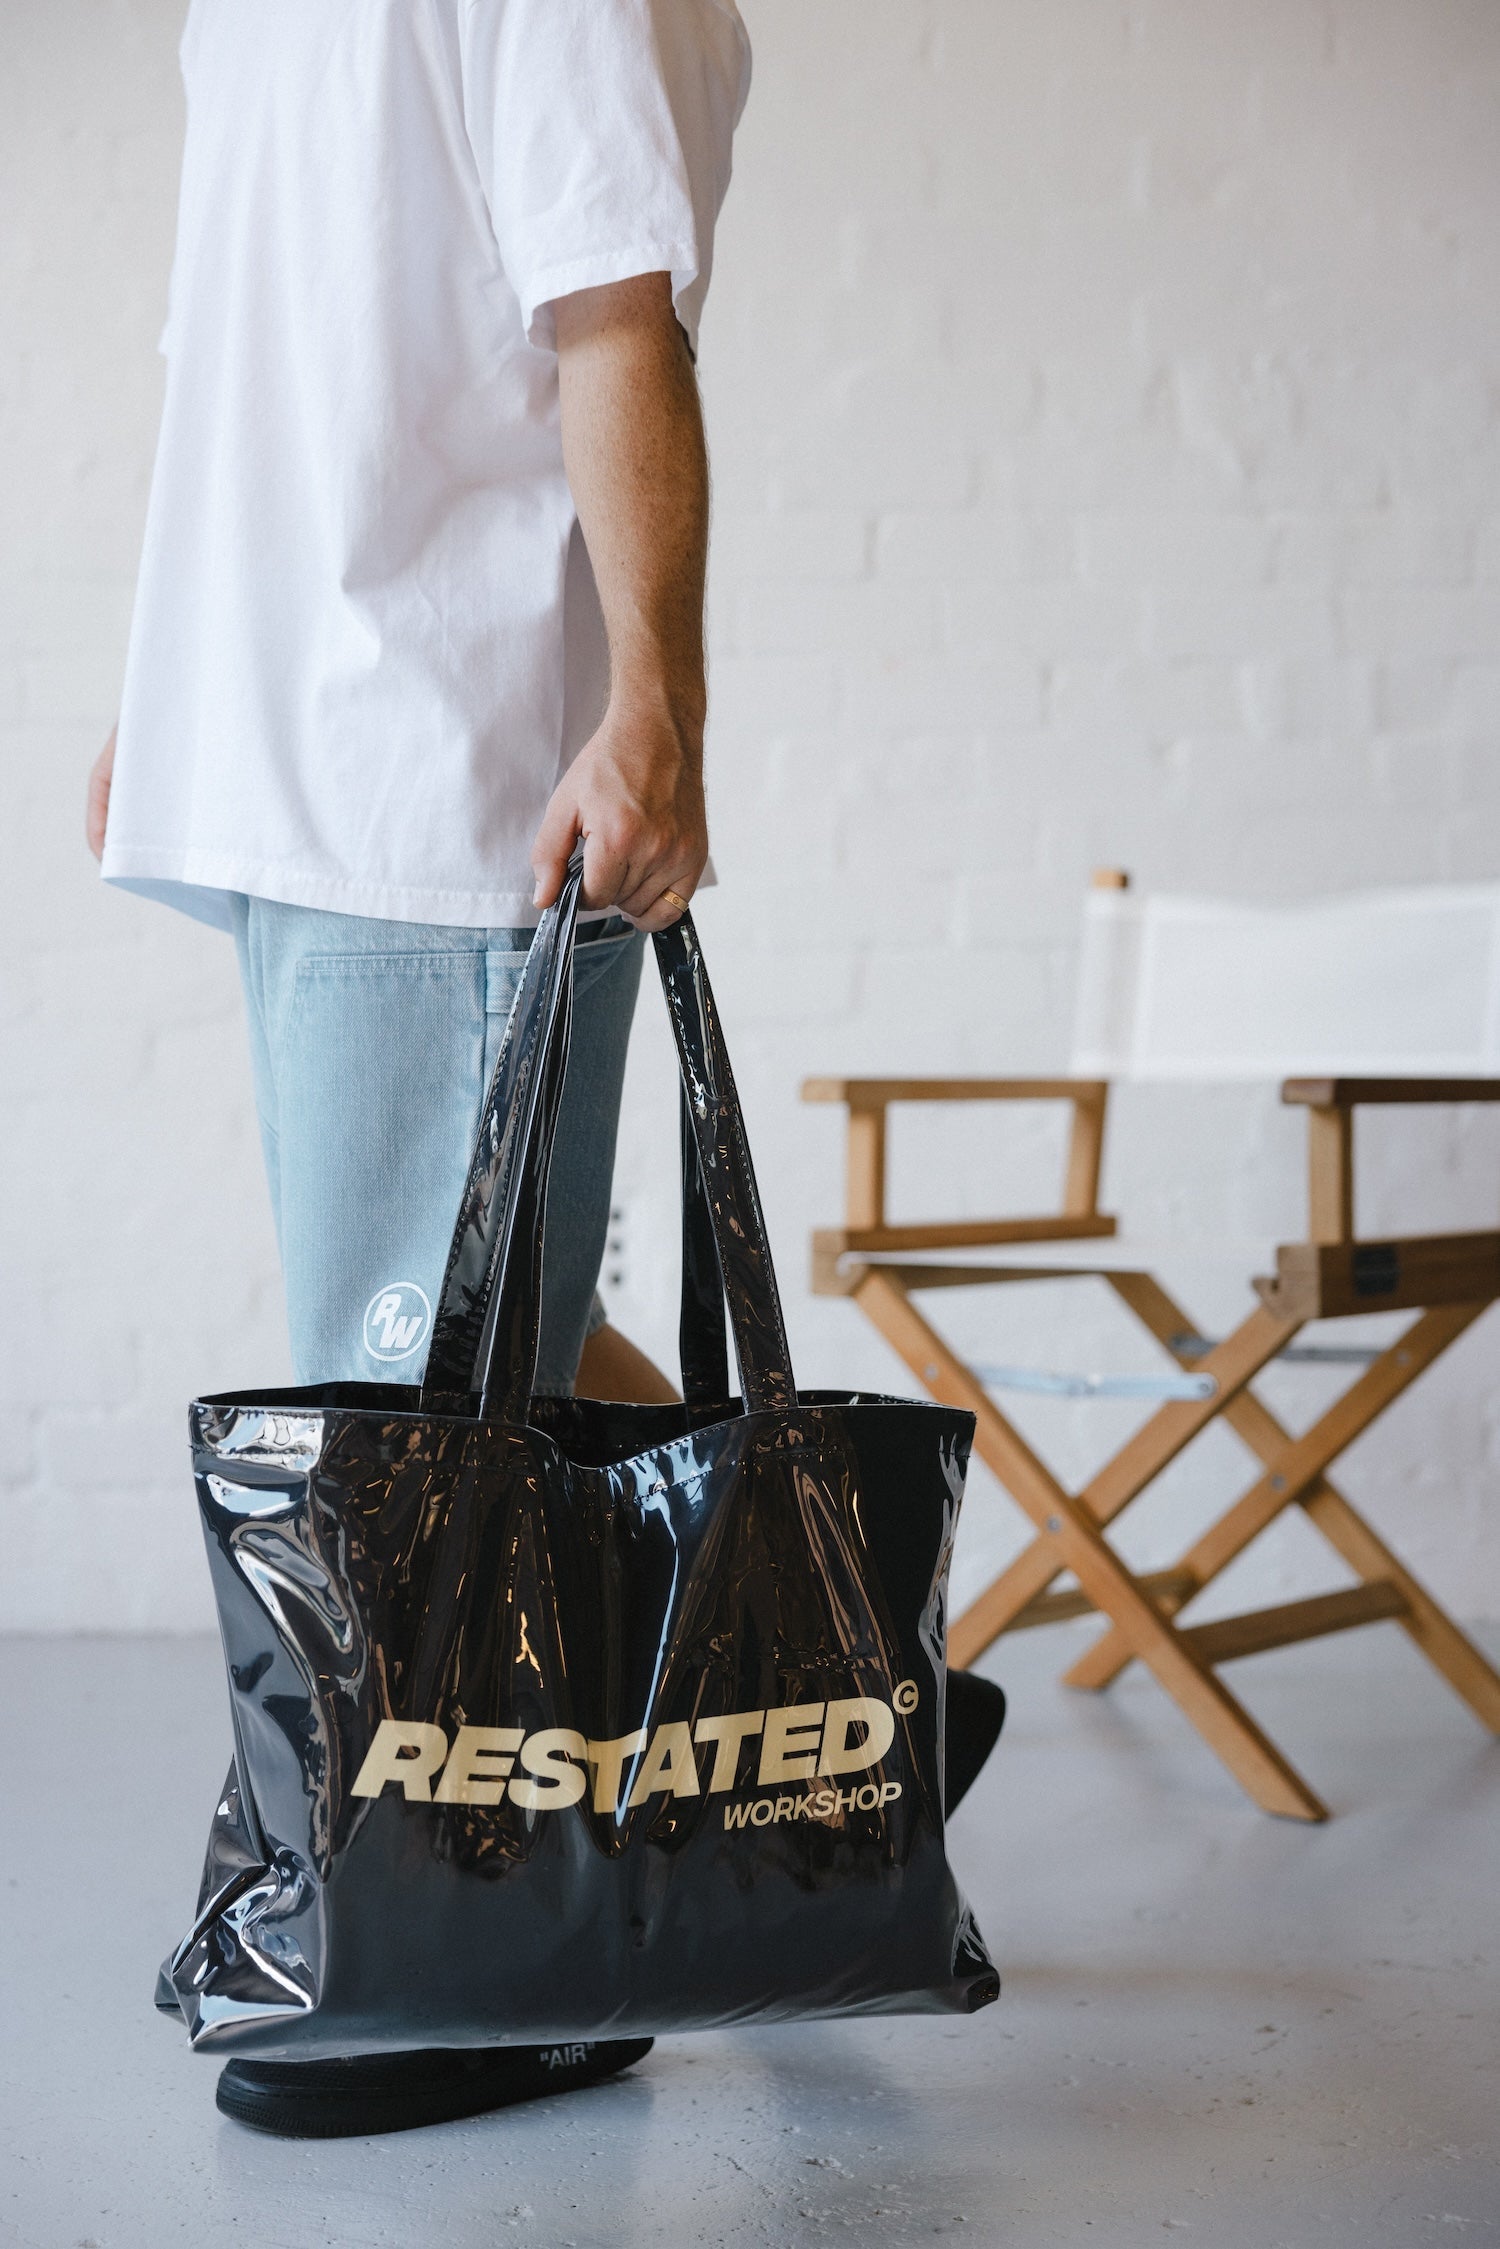 Restated Workshop PVC Tote Bag - Black